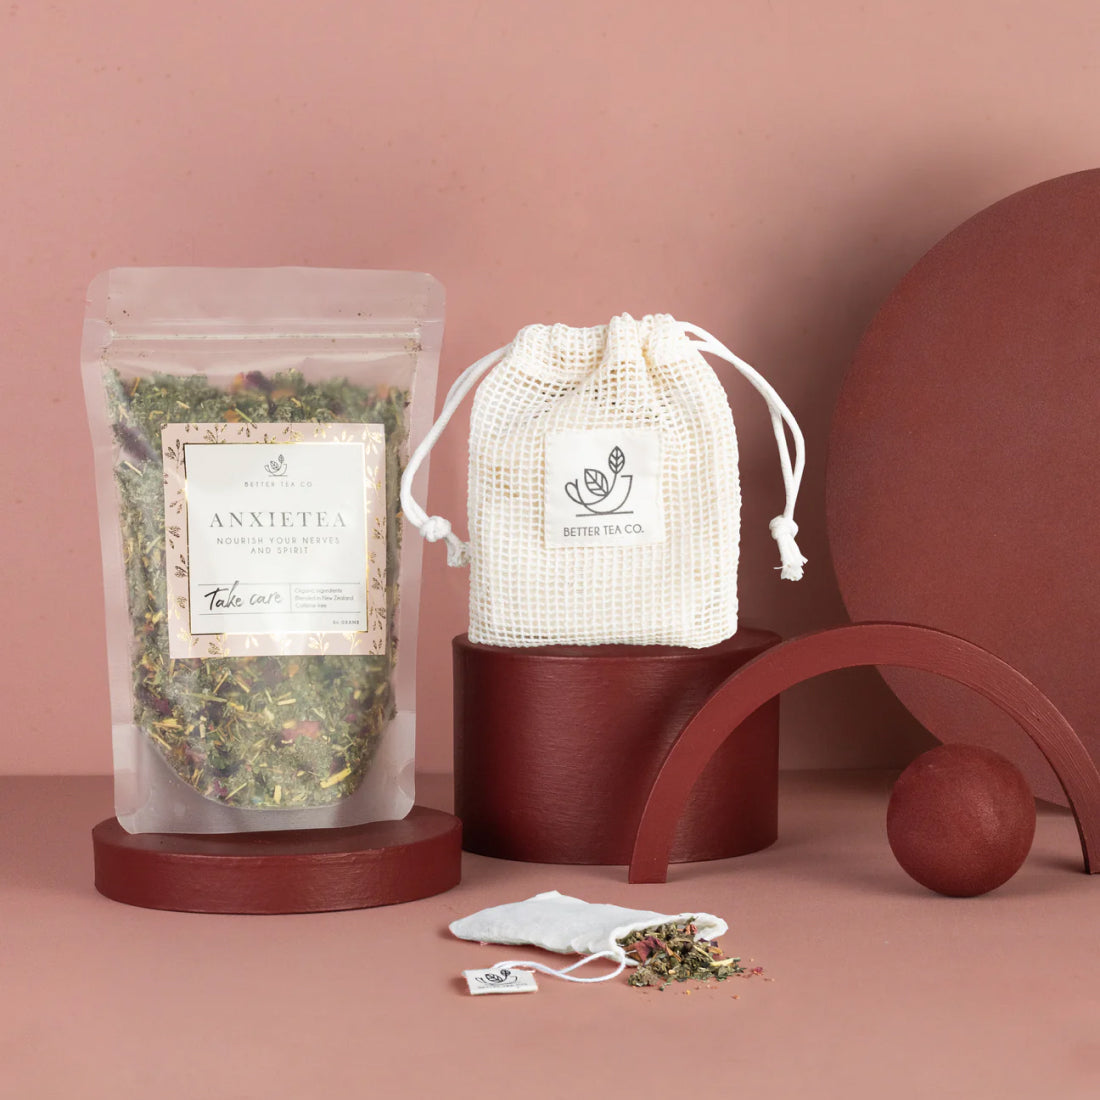 Una bolsa del té Anxietea y bolsas de té reutilizables